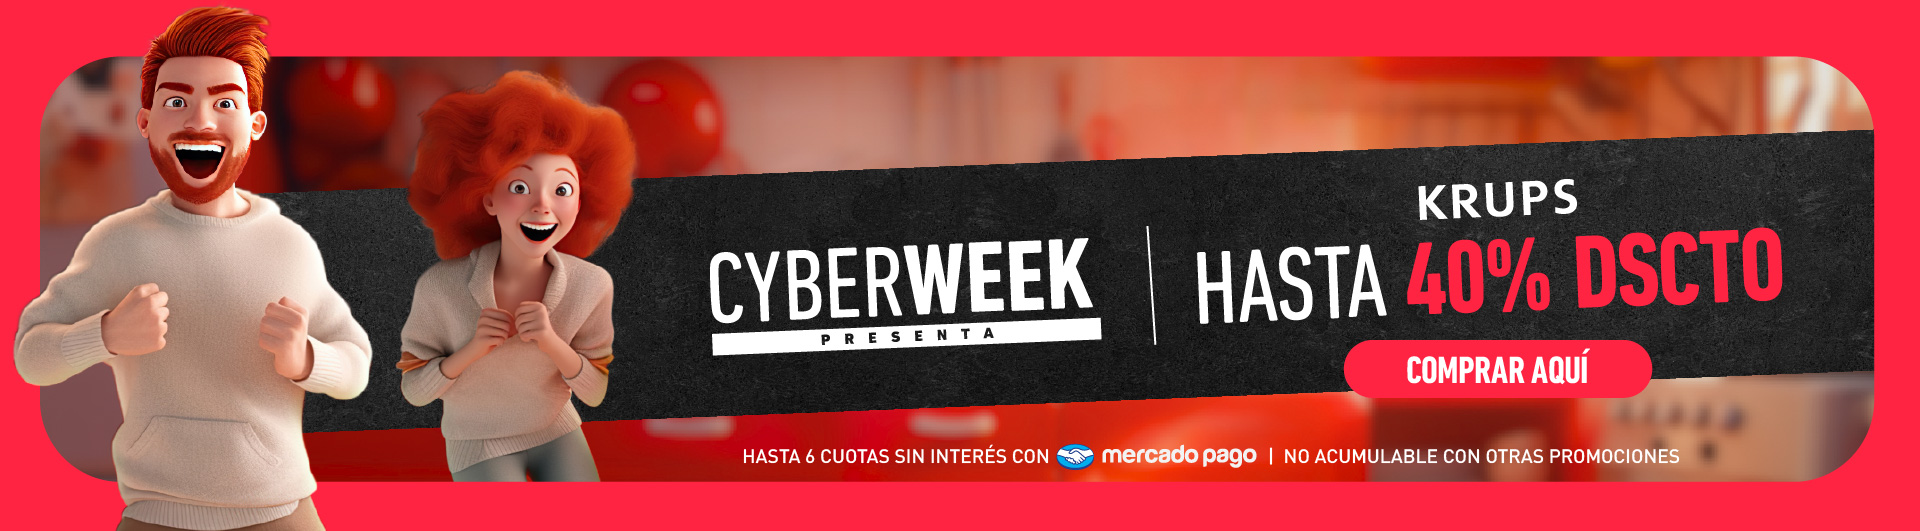 Ofertas Cyber Week Krups